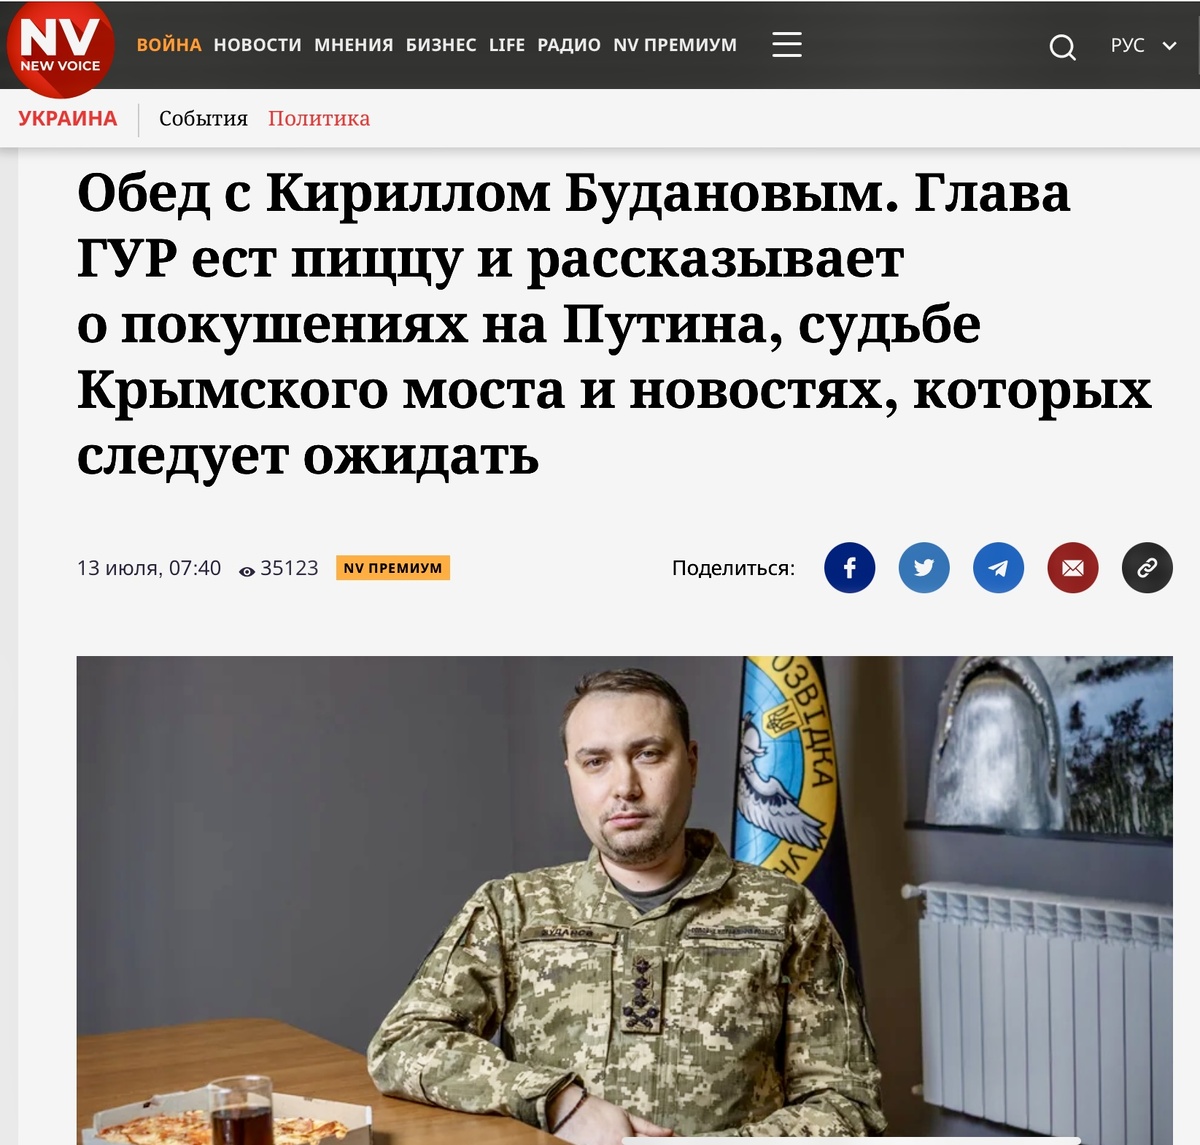 Источник: Буданов в интервью NV (New Voice). Прямая речь Буданова: «Они были (попытки убить Путина - Е.Д.), но, как видите, пока неудачные».